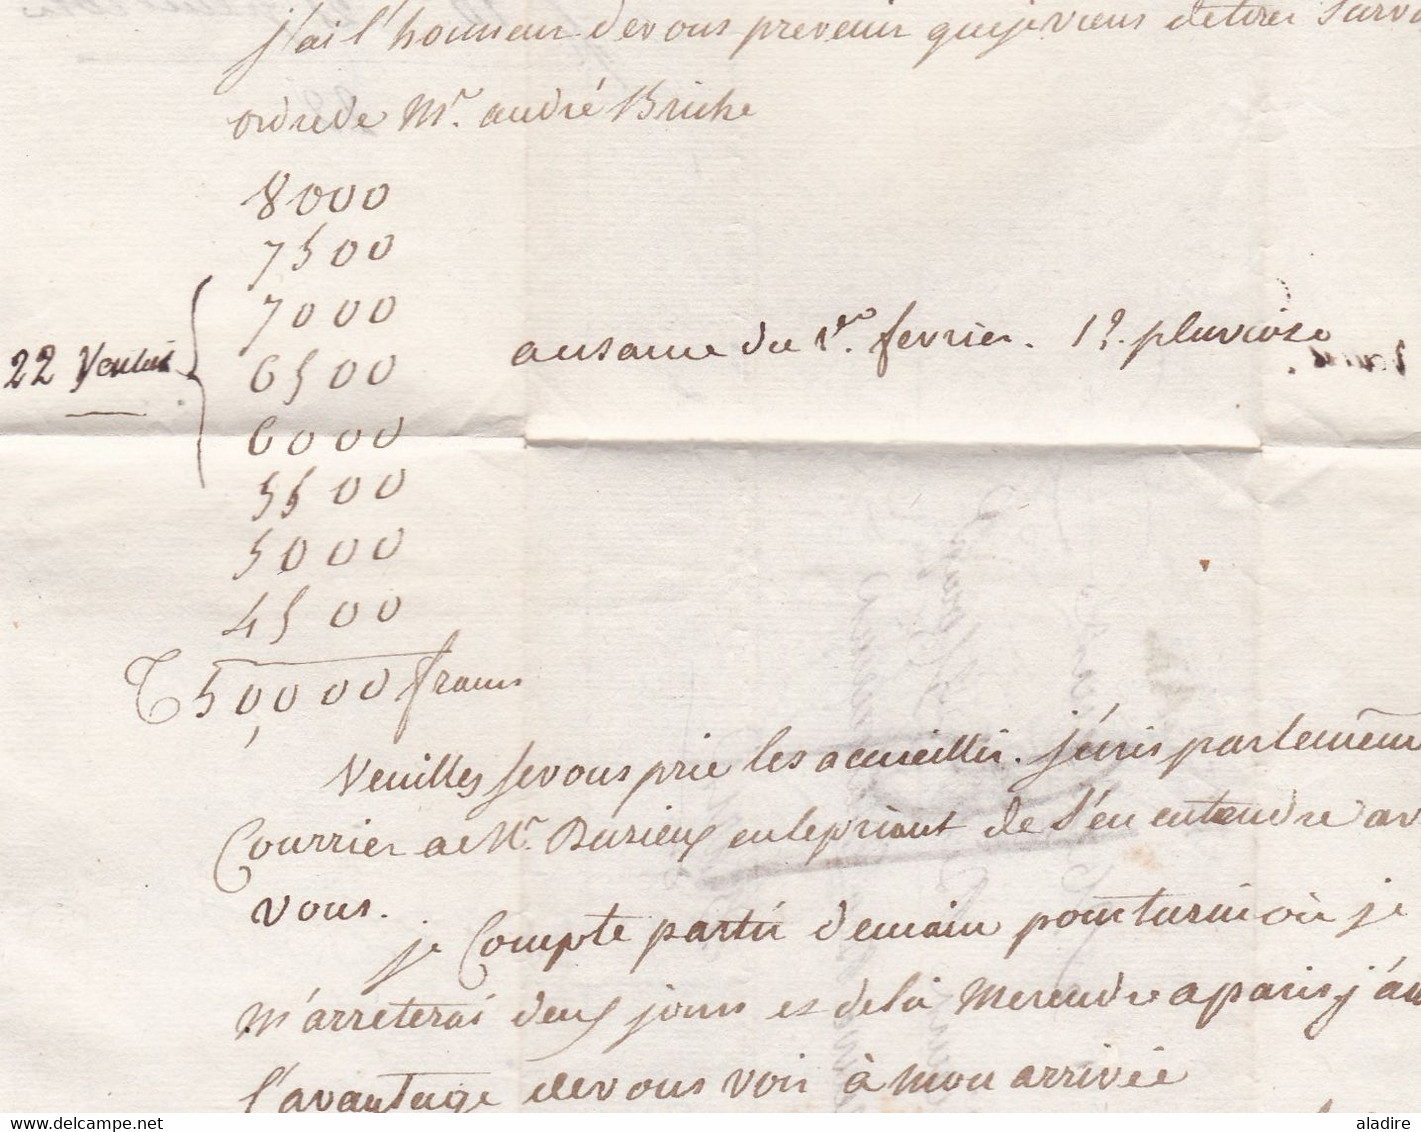 1803 - Marque postale MILAN (Italie, poste française) sur lettre pliée en français vers Paris, France - taxe 13